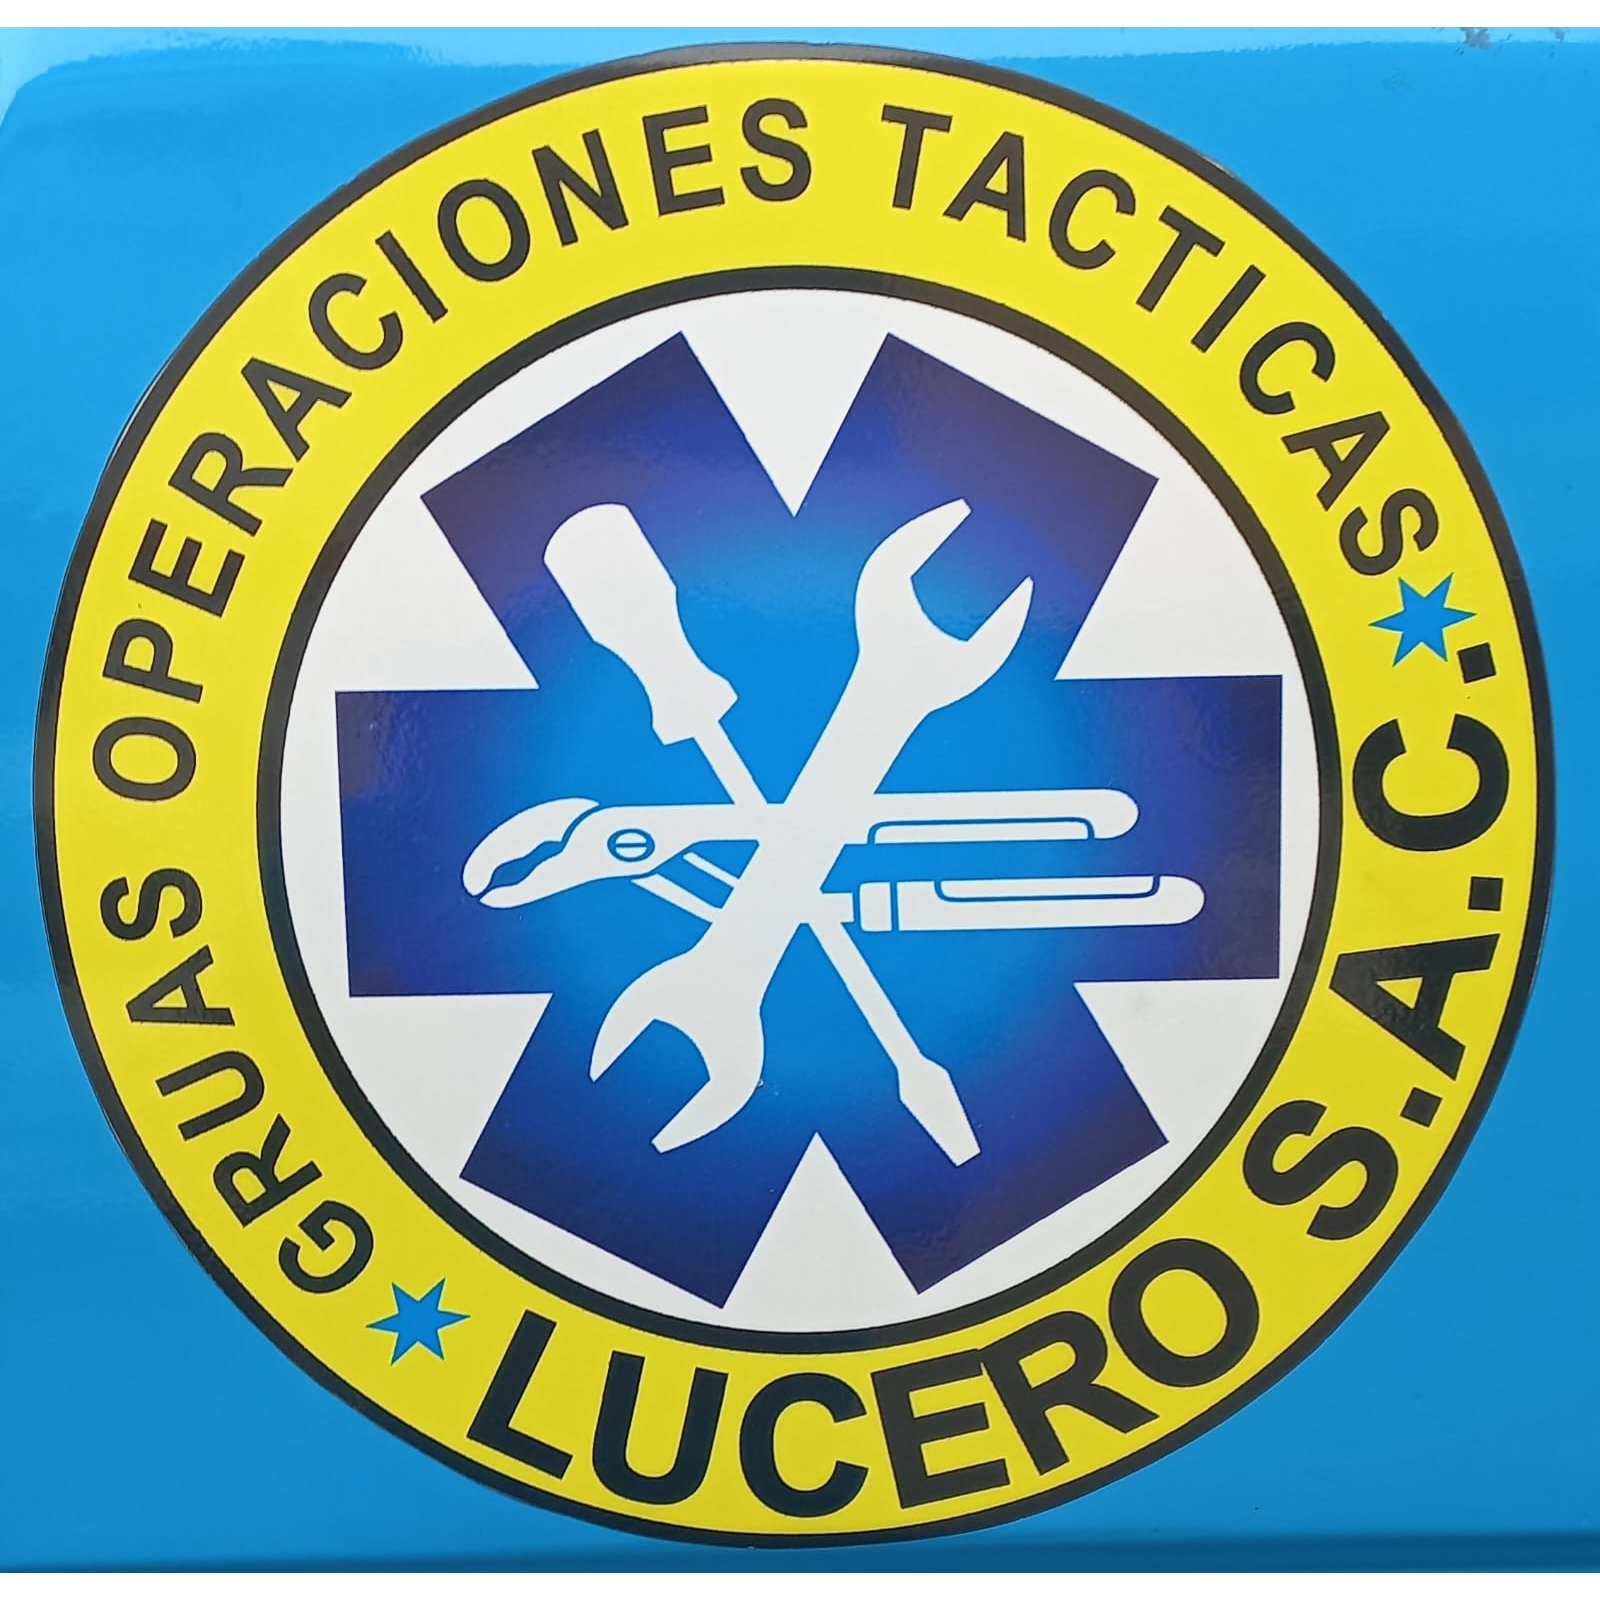 Grúas Operaciones Tácticas Lucero S.A.C - Crane Service - Lima - 955 573 481 Peru | ShowMeLocal.com